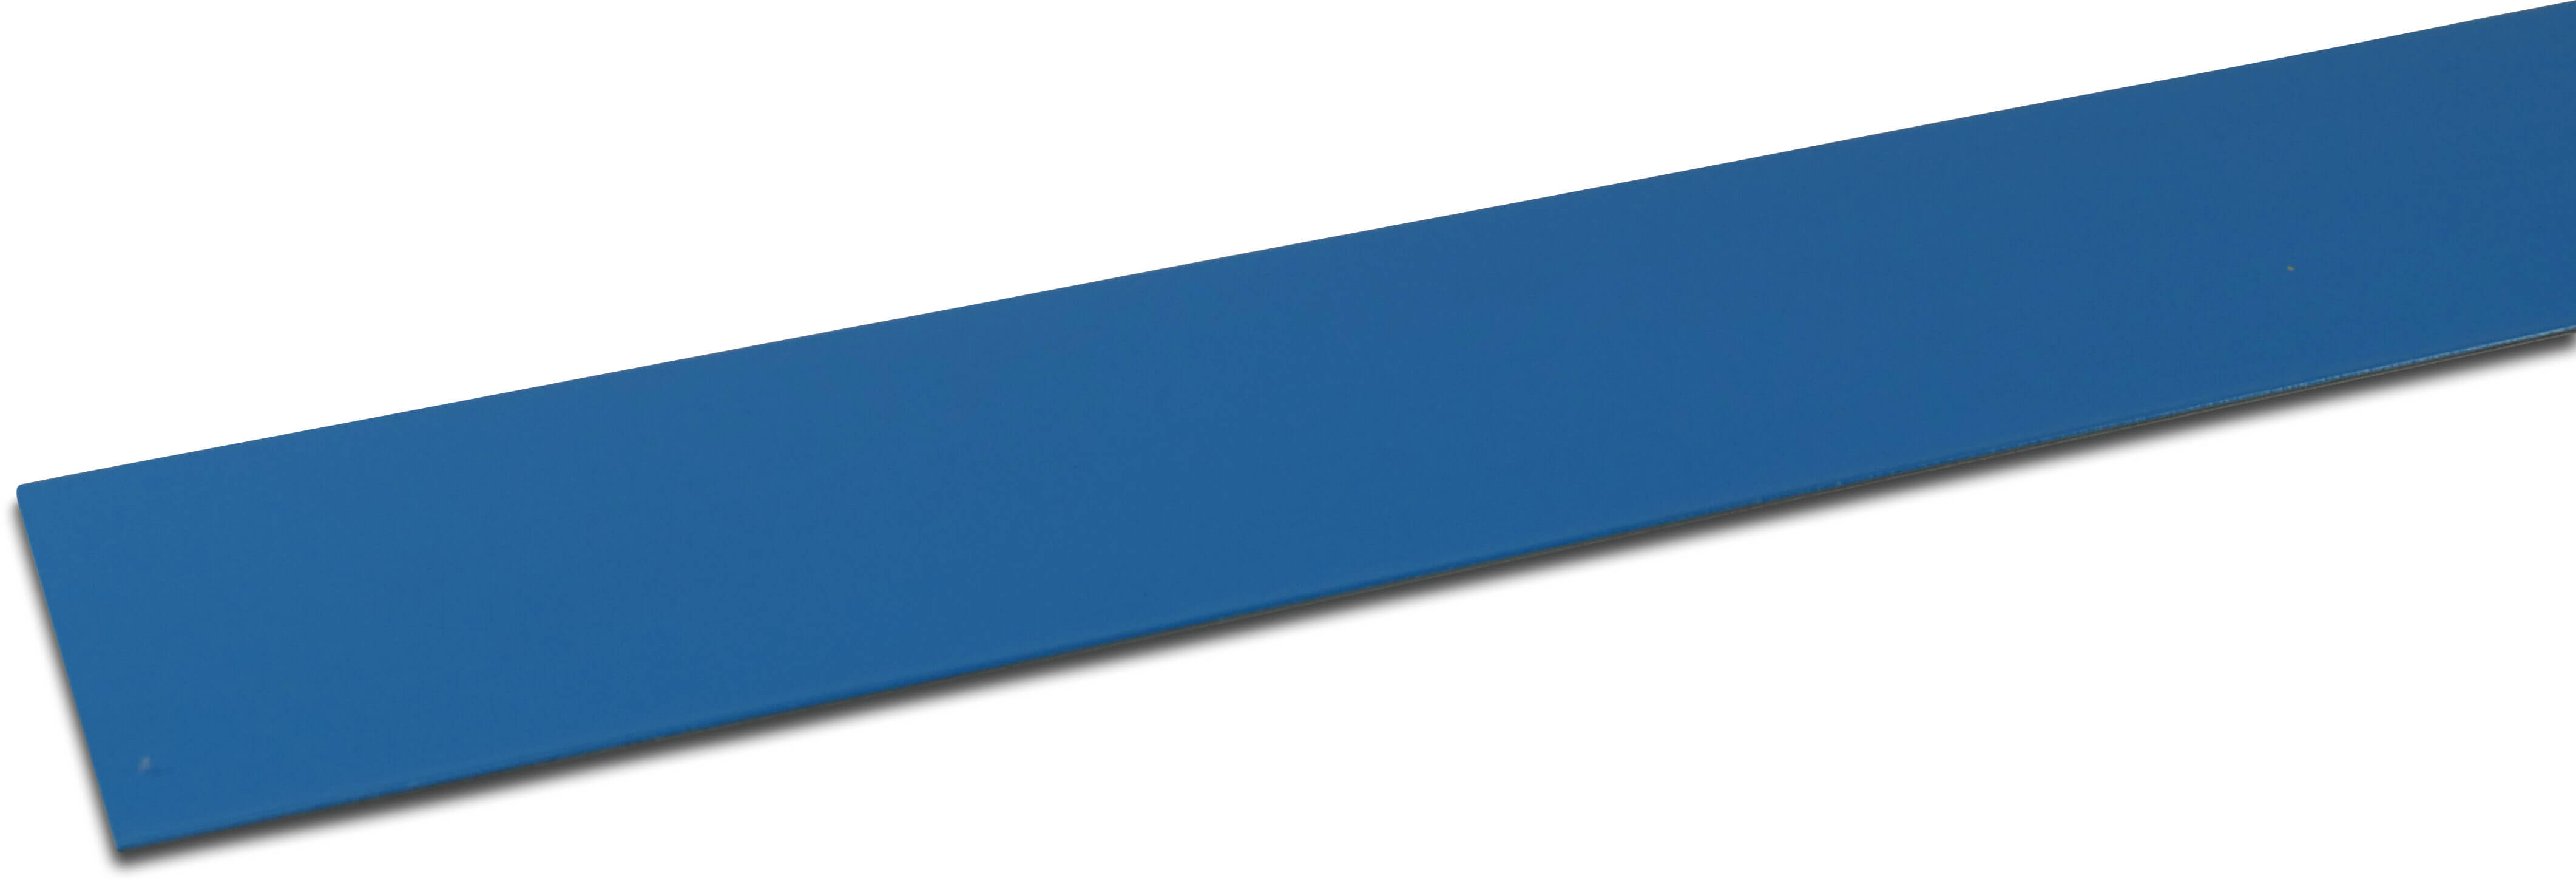 Elbe Profil metal coated PVC 70 mm x 30 mm x 2000 mm blå 2m type Invändig vinkel